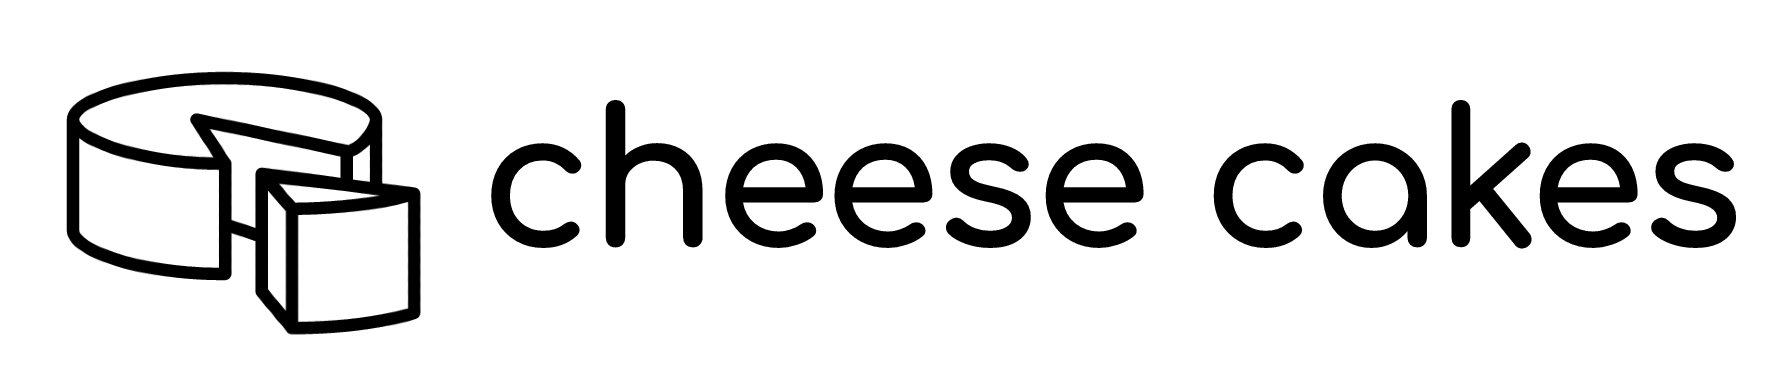 チーズケーキの総合サイト【Cheese Cakes】